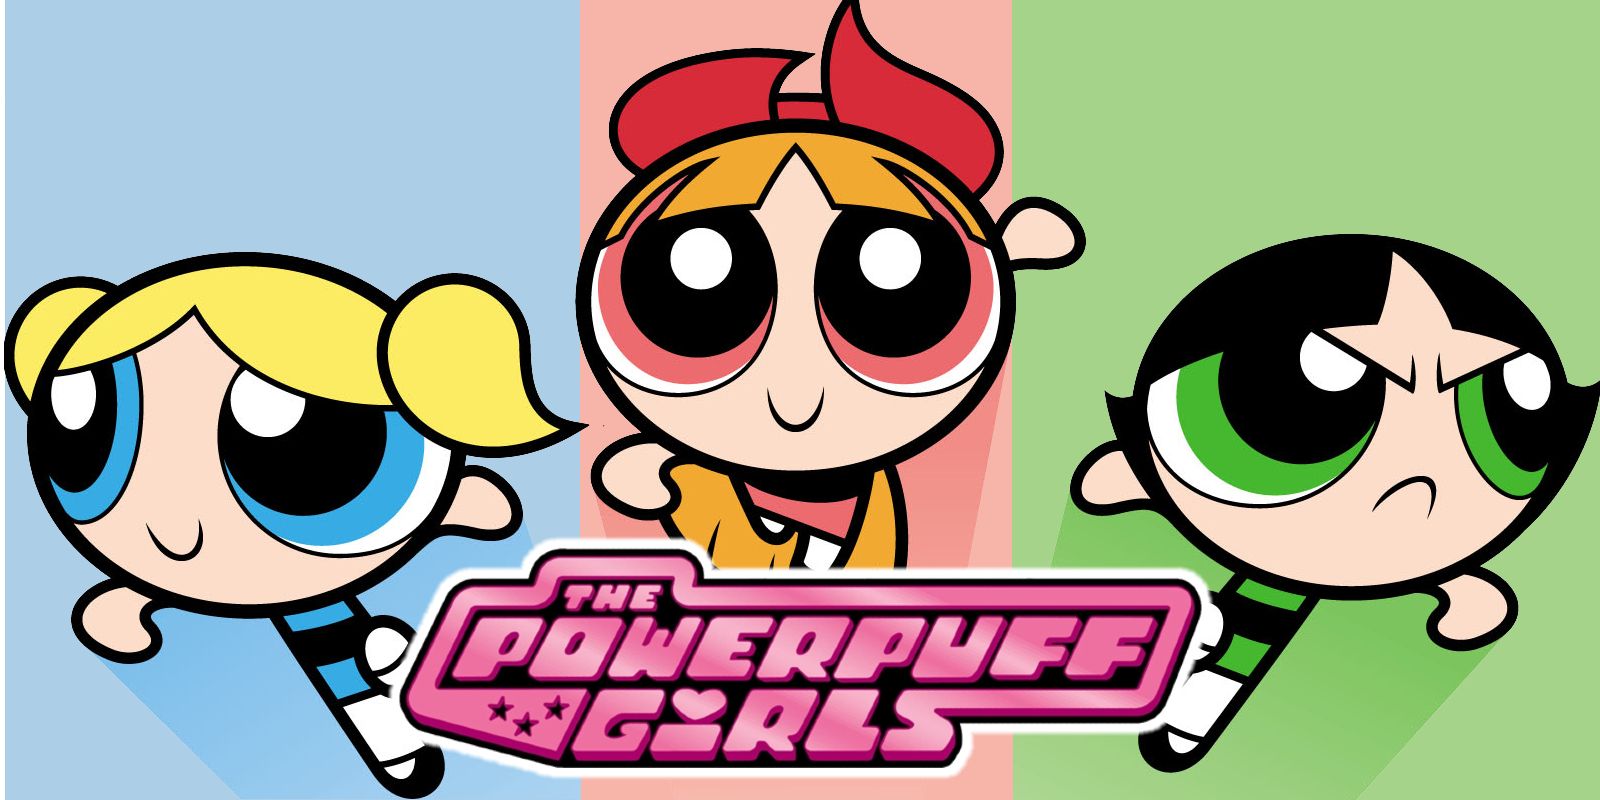 make up the powerpuff girls